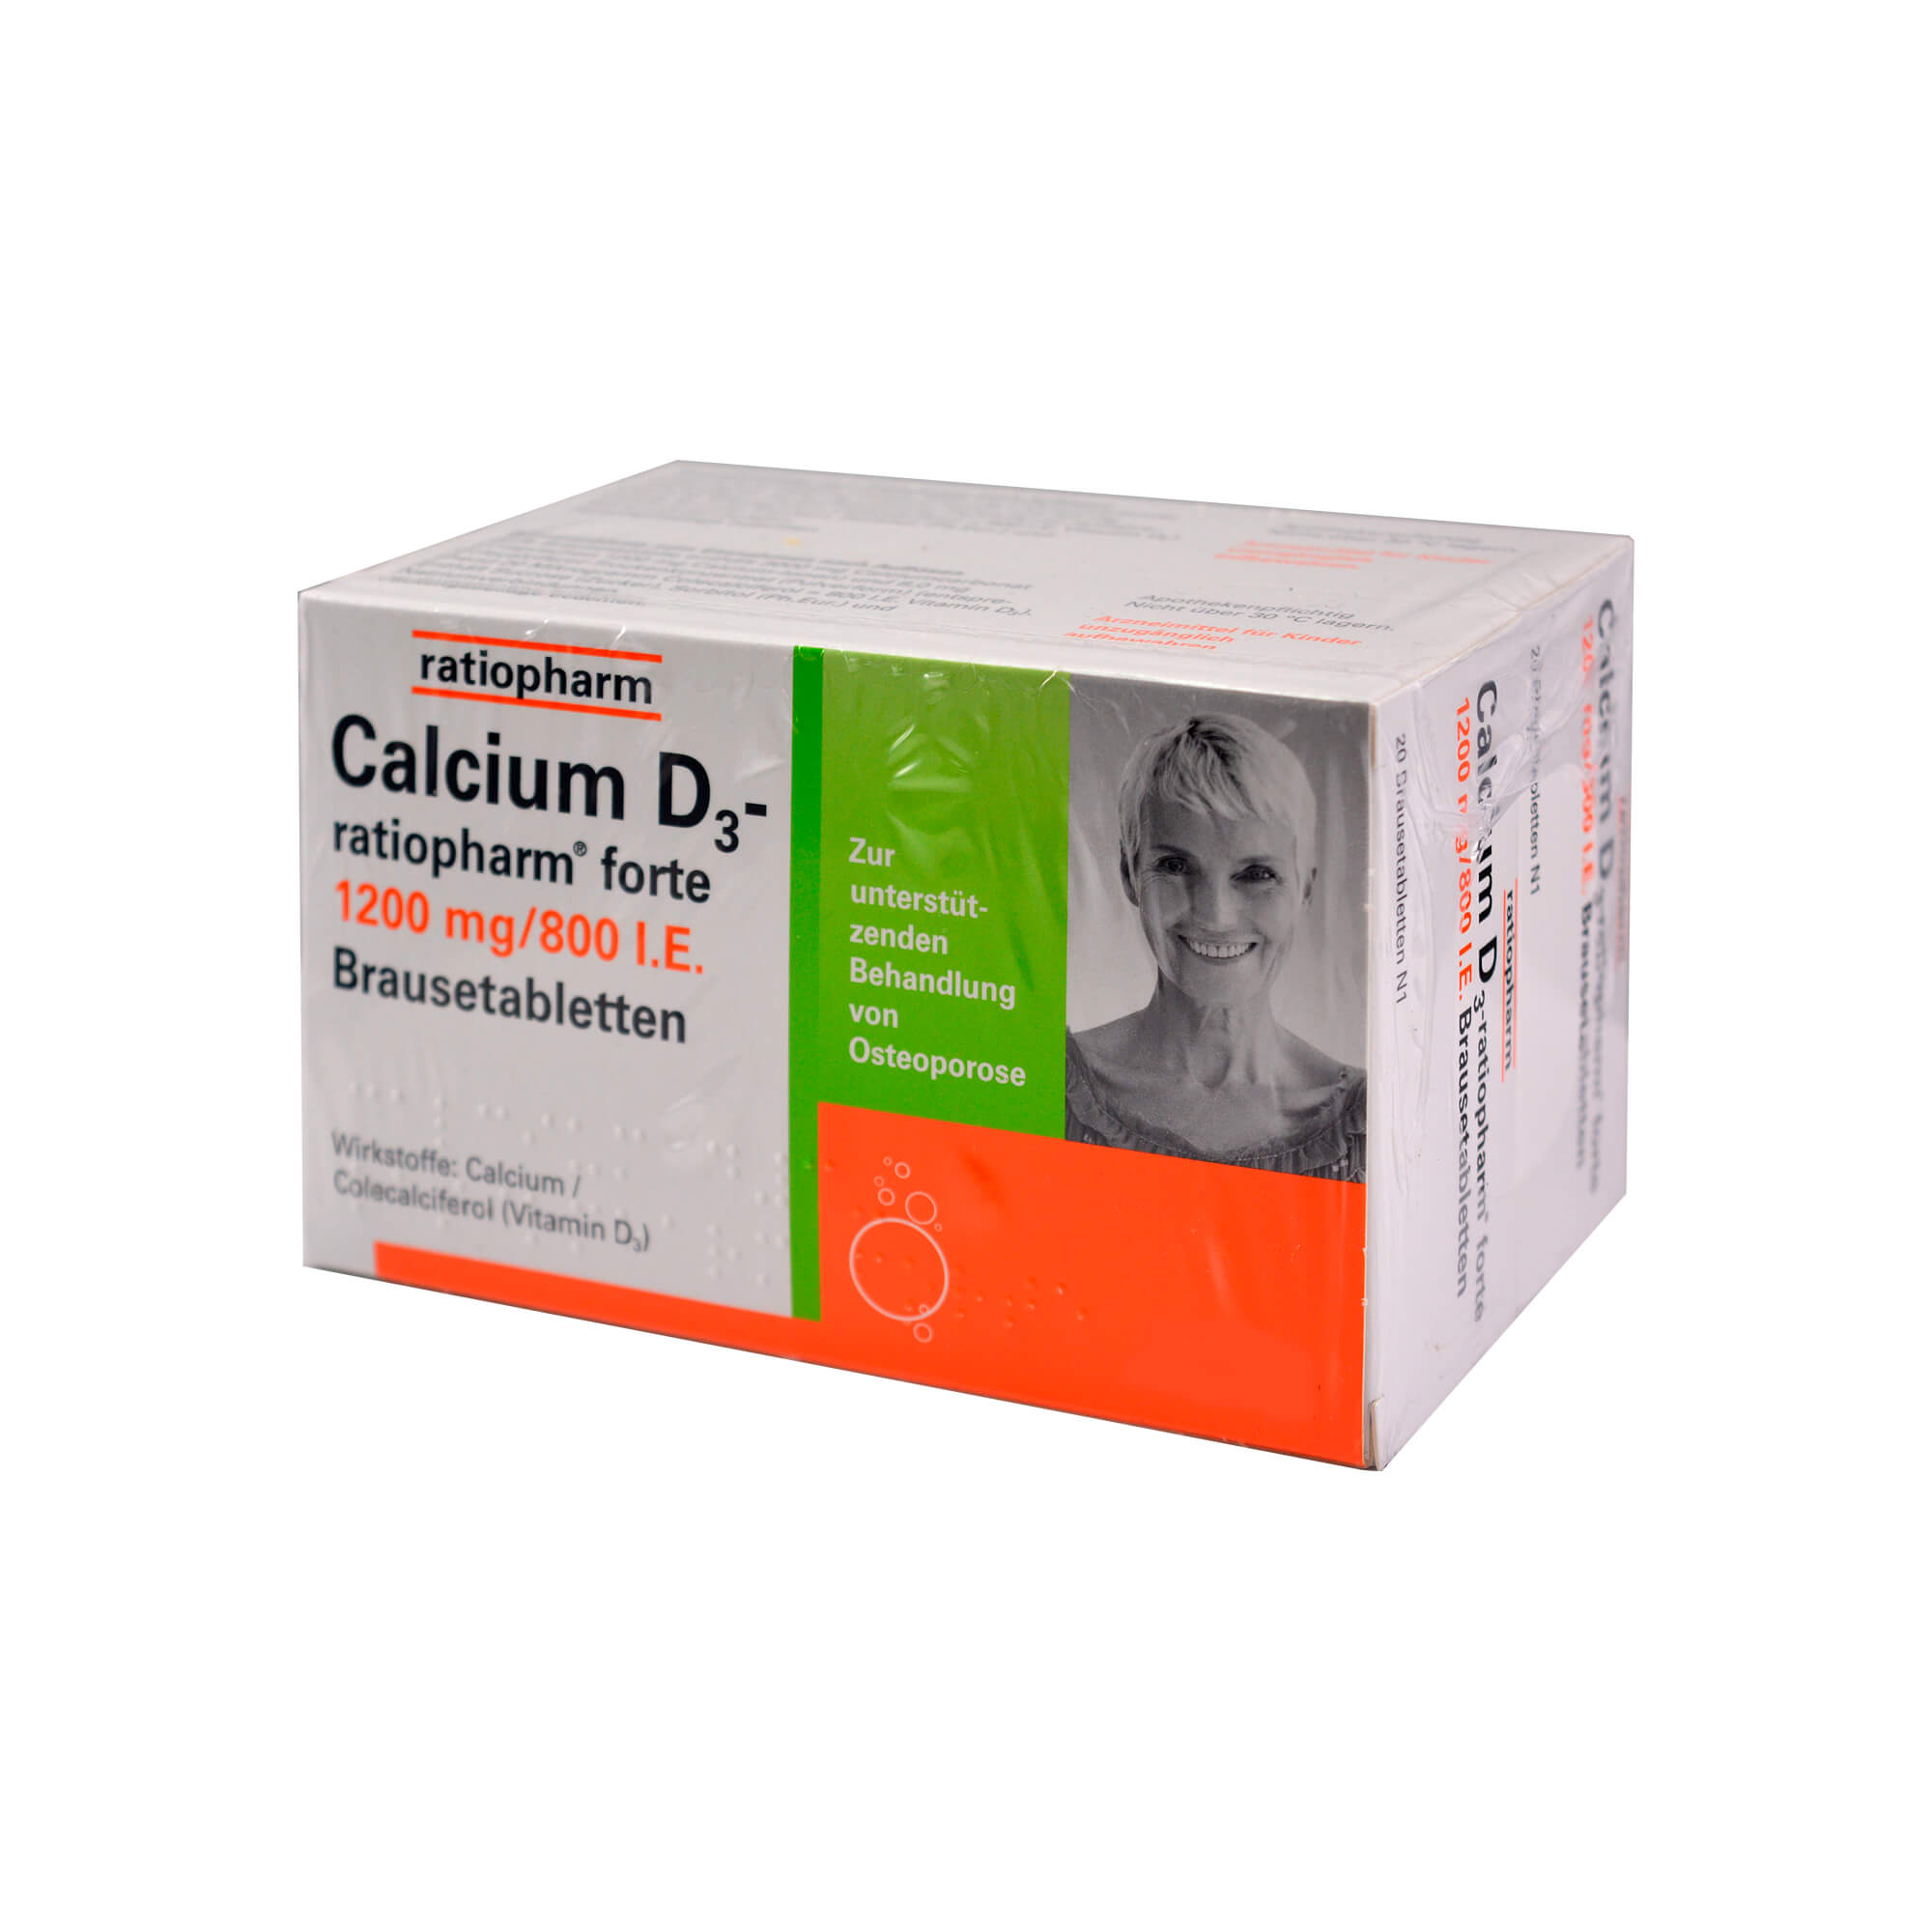 Bei nachgewiesenem Calcium- und Vitamin-D3-Mangel sowie zur unterstützenden Behandlung von Osteoporose.